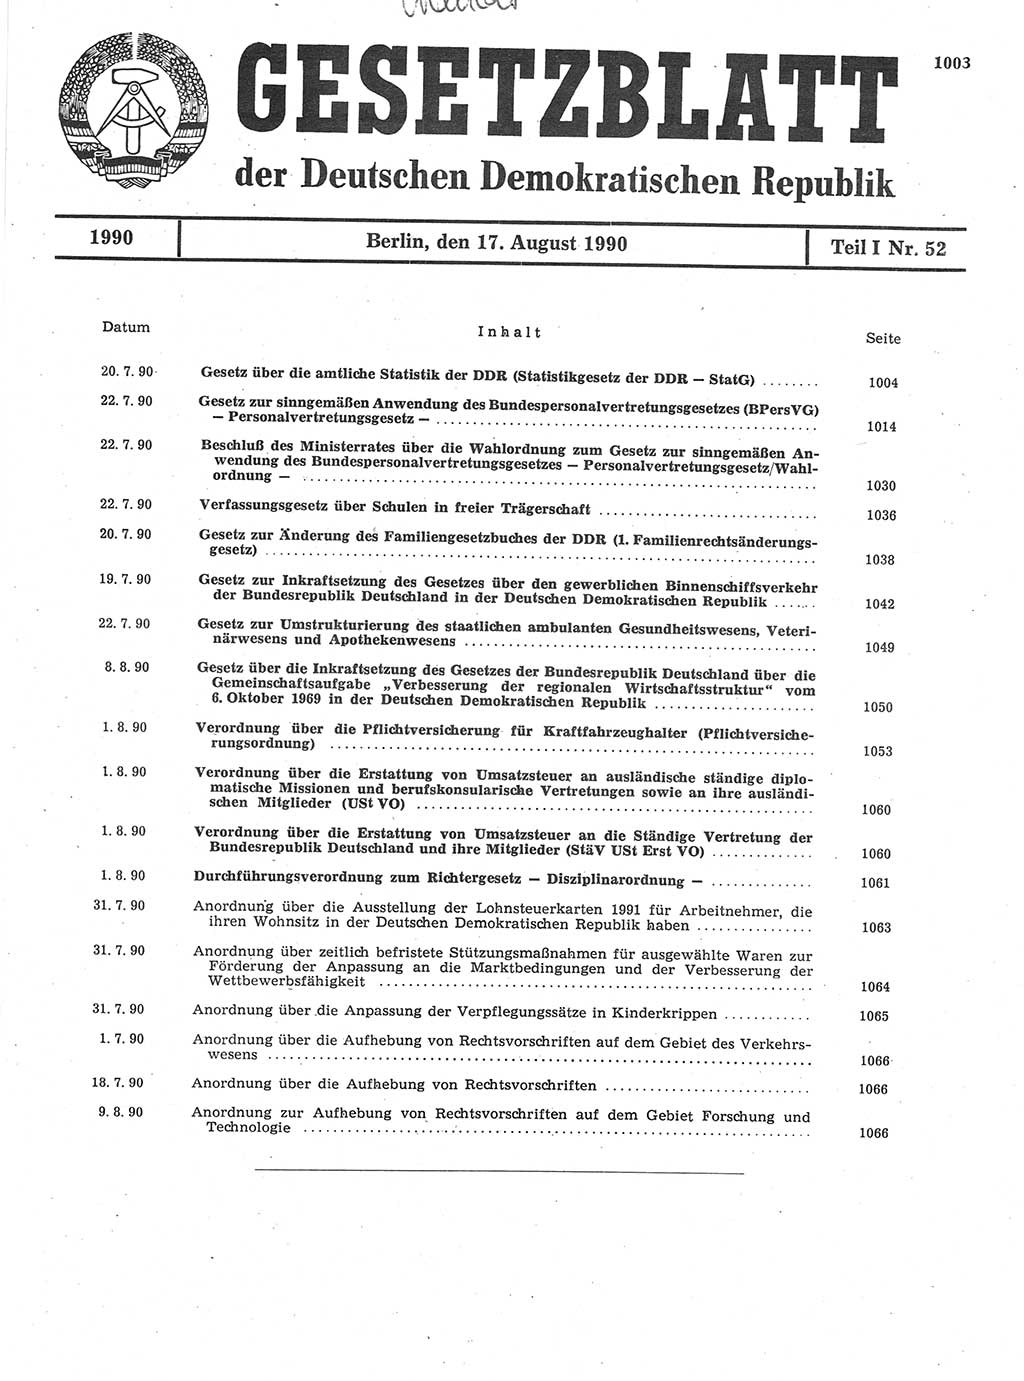 Gesetzblatt (GBl.) der Deutschen Demokratischen Republik (DDR) Teil Ⅰ 1990, Seite 1003 (GBl. DDR Ⅰ 1990, S. 1003)